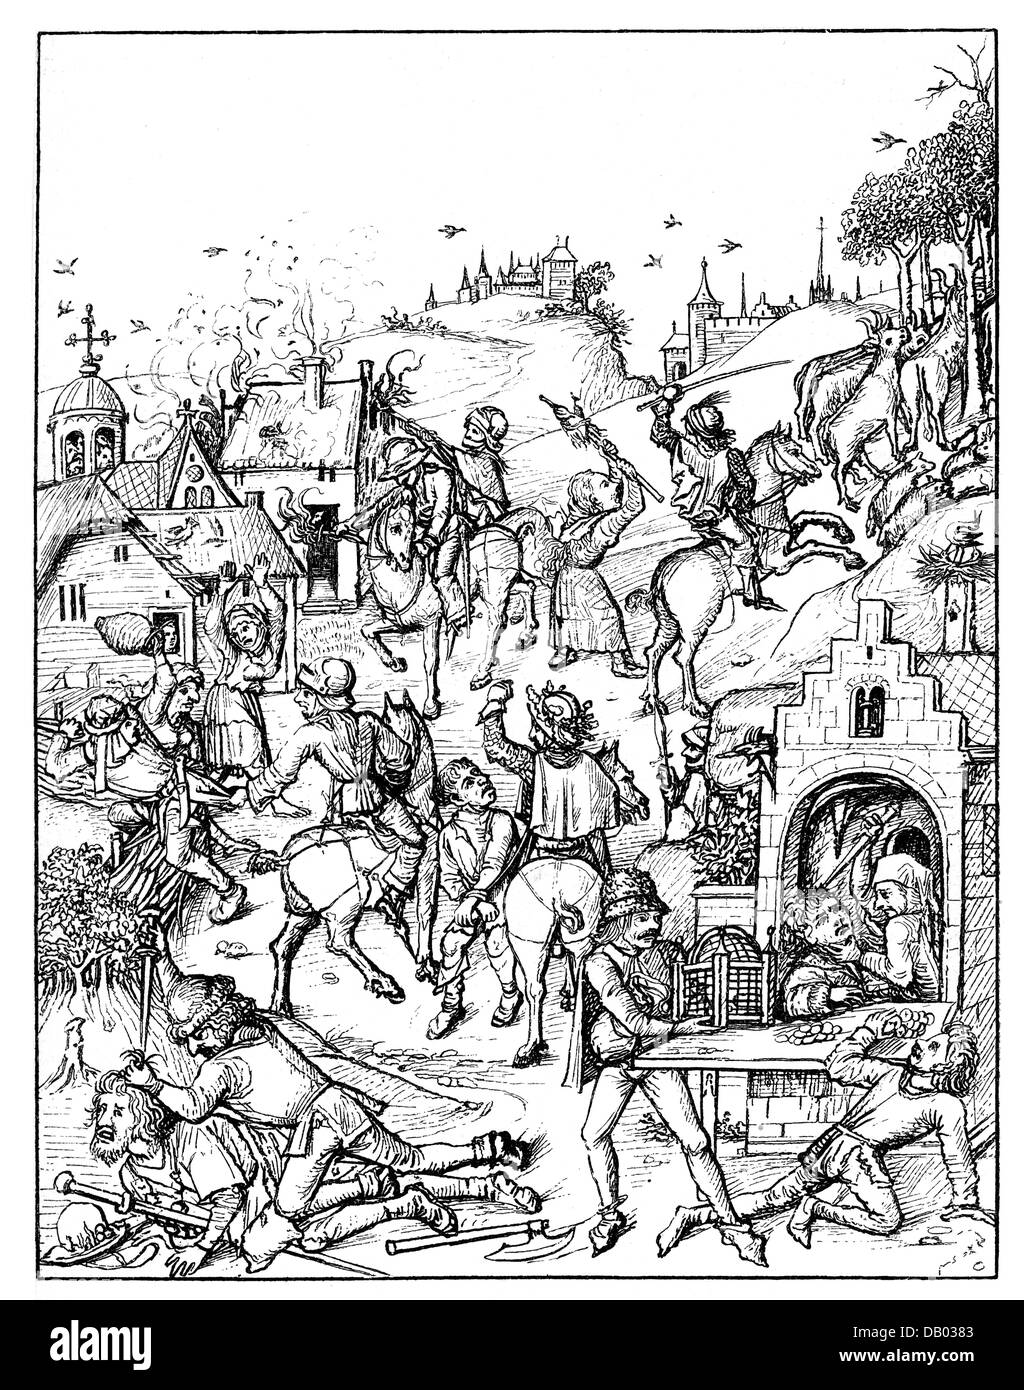 Moyen âge, chevaliers, barons de voleurs pilant un village, illustration de 'Mittelalterliches Hausbuch', fin du XVe siècle, droits supplémentaires-Clearences-non disponible Banque D'Images